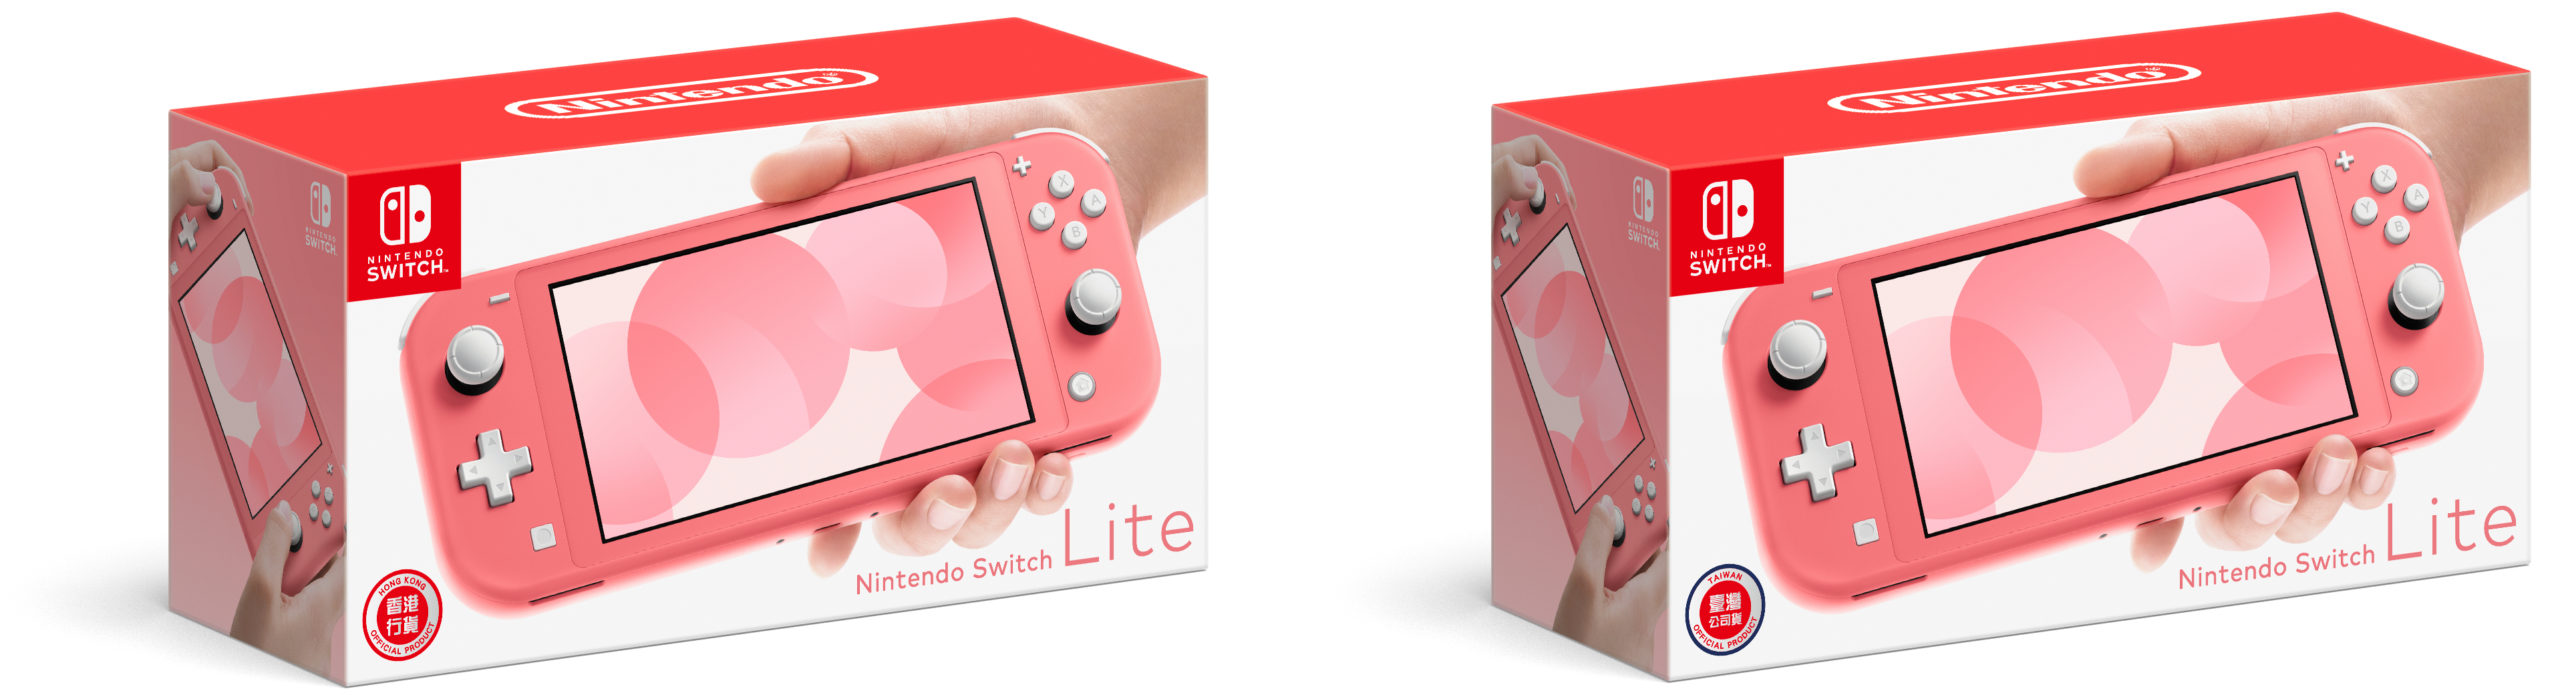 携帯専用「Nintendo Switch Lite」の新色 『Nintendo Switch Lite